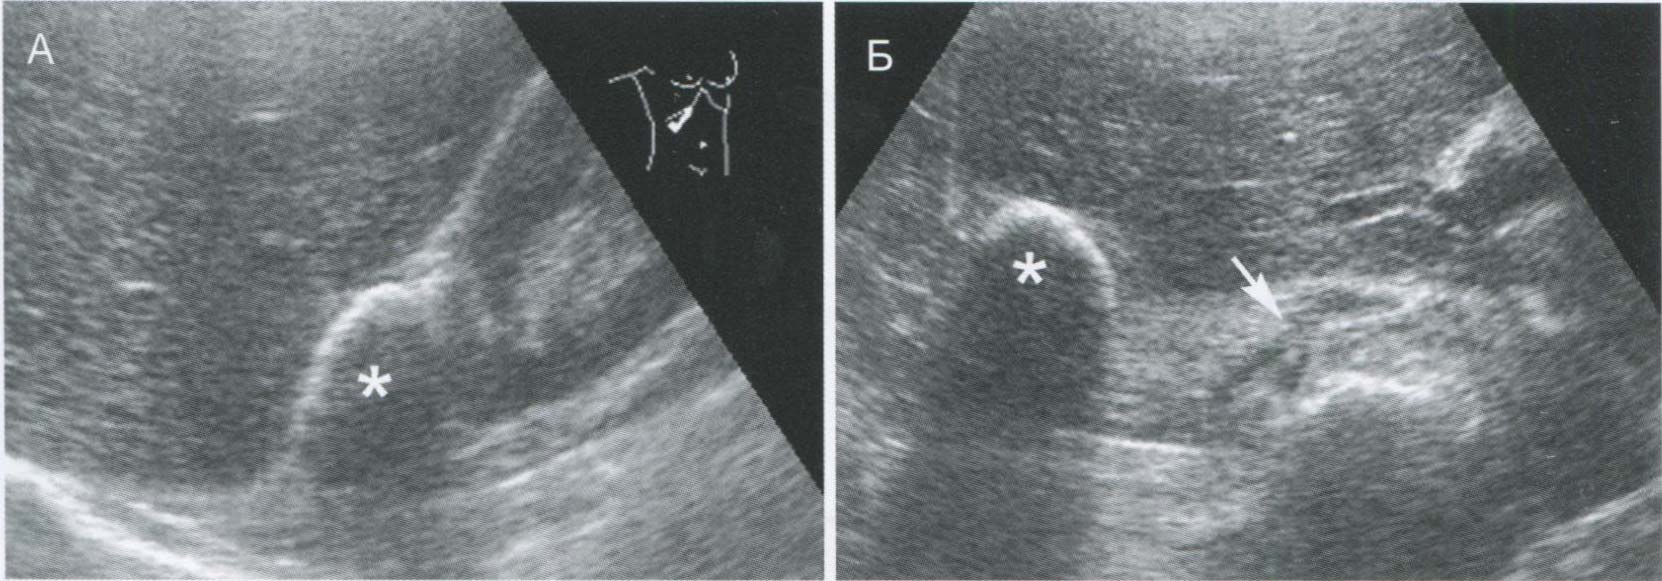  Кальцинат печени (*), ошибочно принятый при продольном сканировании (А) за кальцинат правого надпочечника.